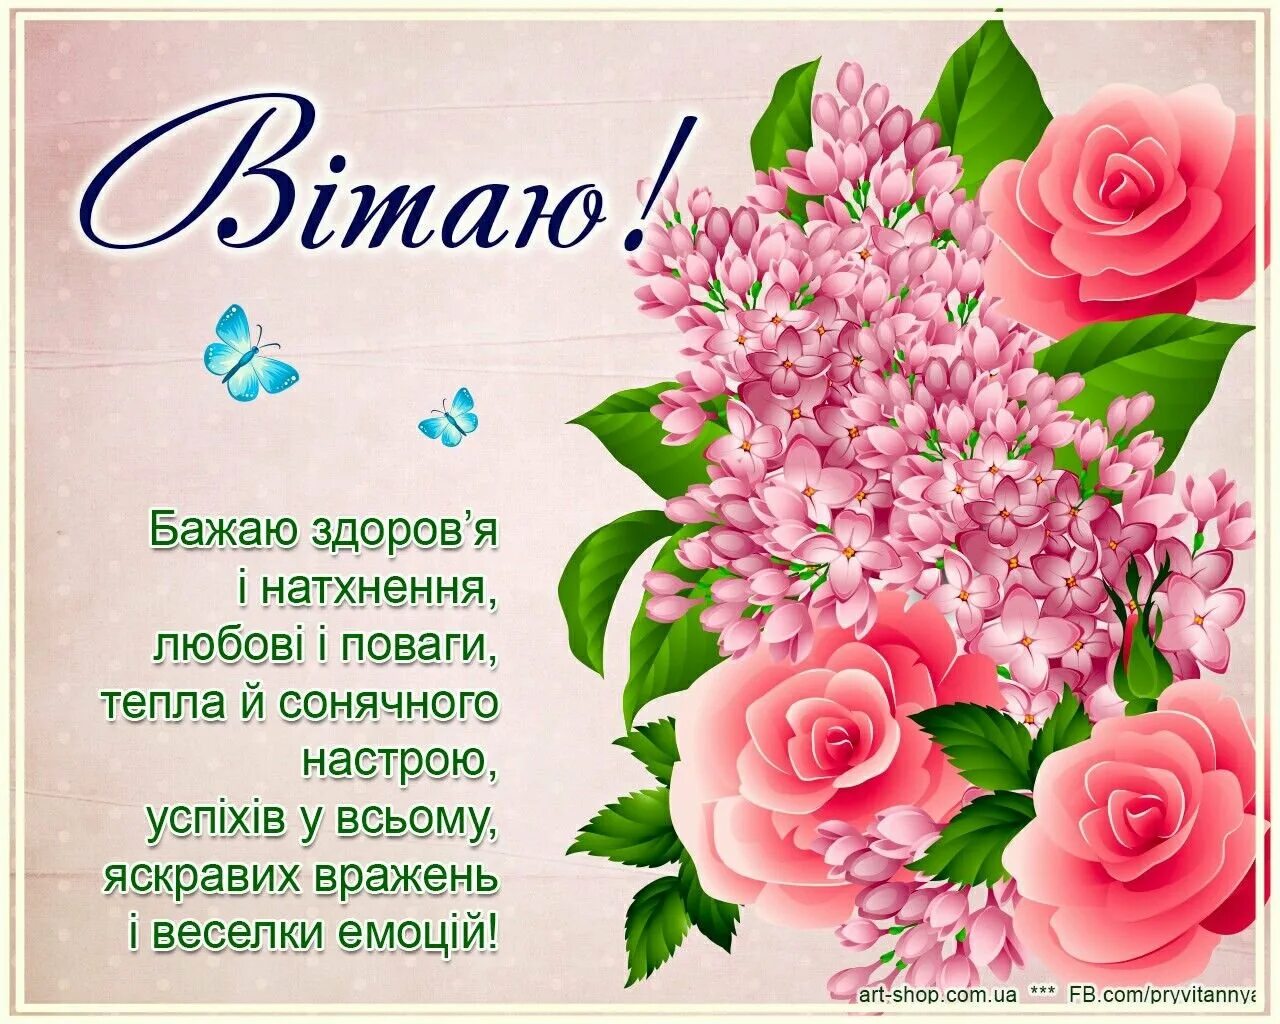 Поздравления на украинском языке. З днем народження. Поздравления с днём рождения на украинском языке. Поздравление с днёмрожденияна украинскомязыке. Поздравления с днём рождения женщине на украинском языке.